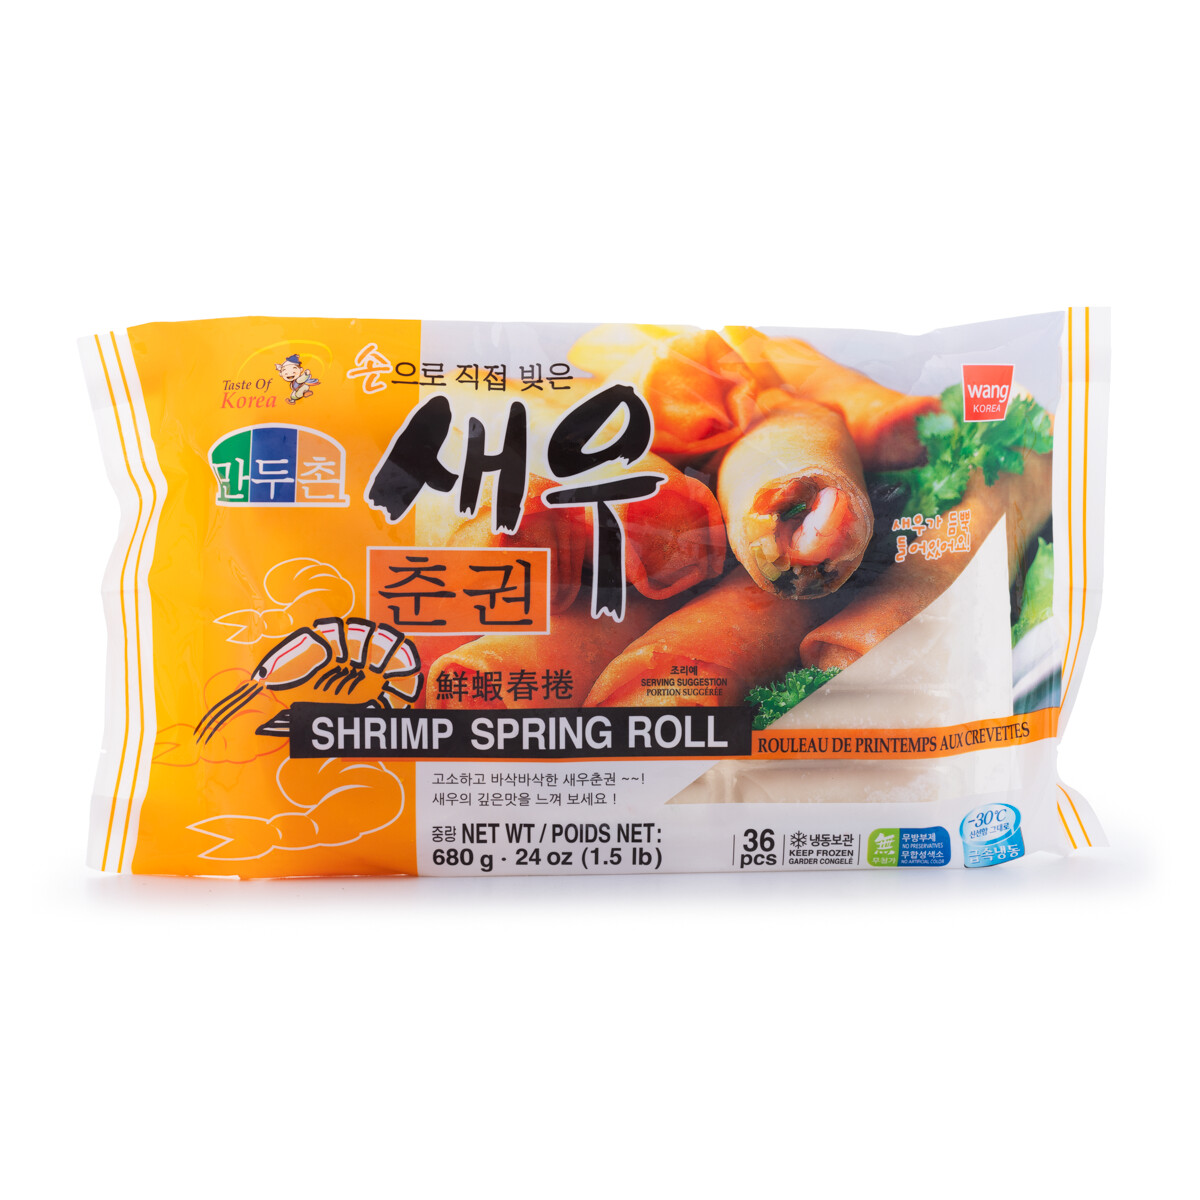 Wang Shrimp Spring Roll (680G)